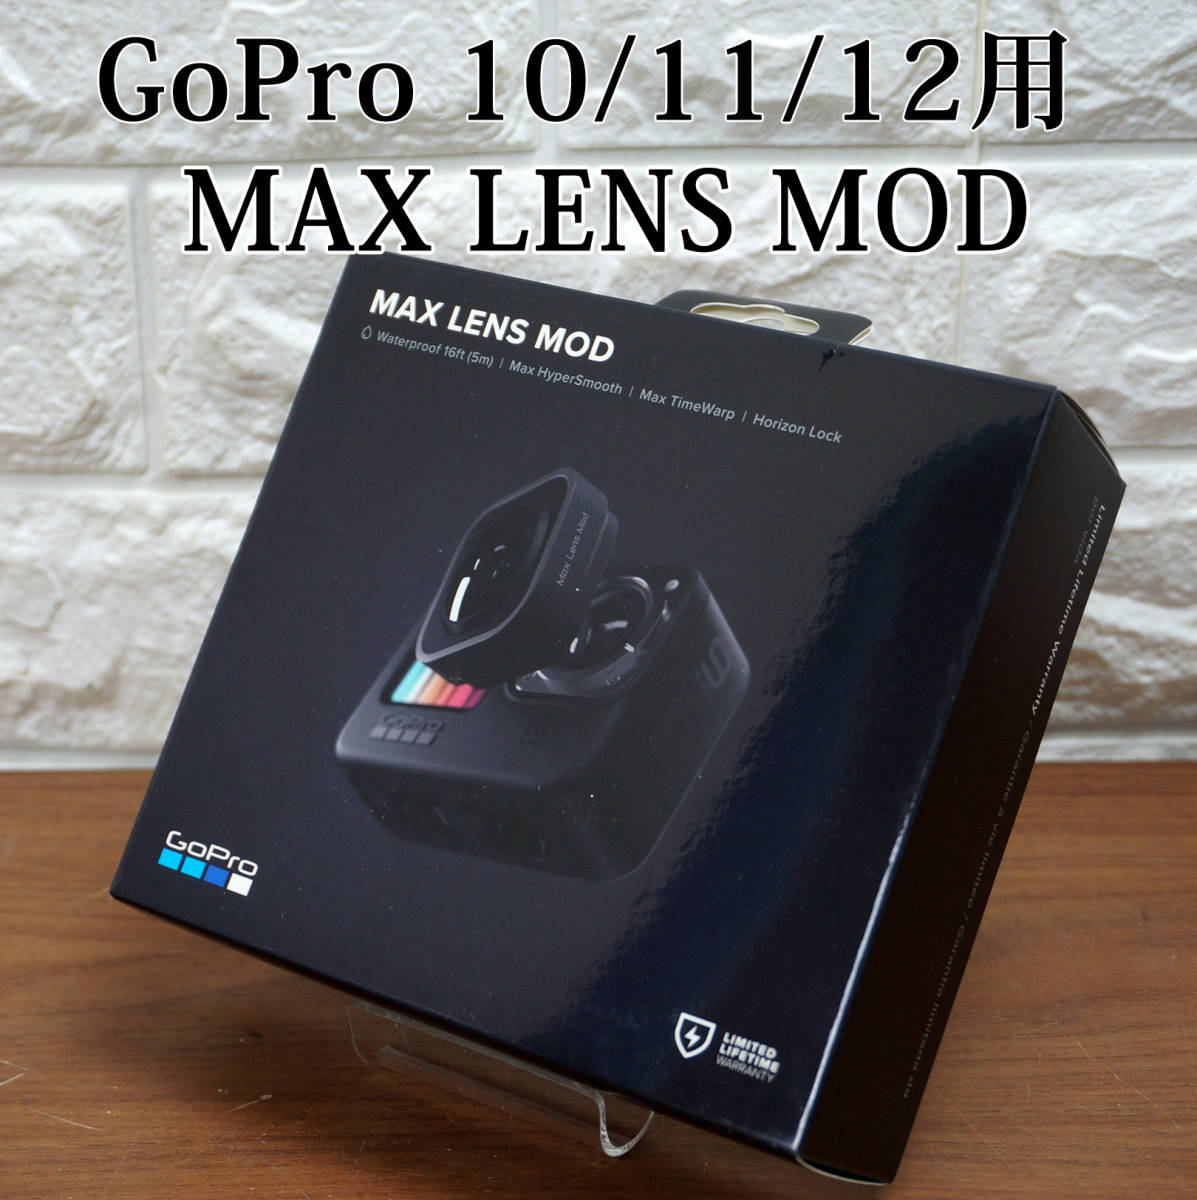 新品未使用品!! GoPro Hero 10/11/12 BLACK用MAX LENS MOD ADWAL-001